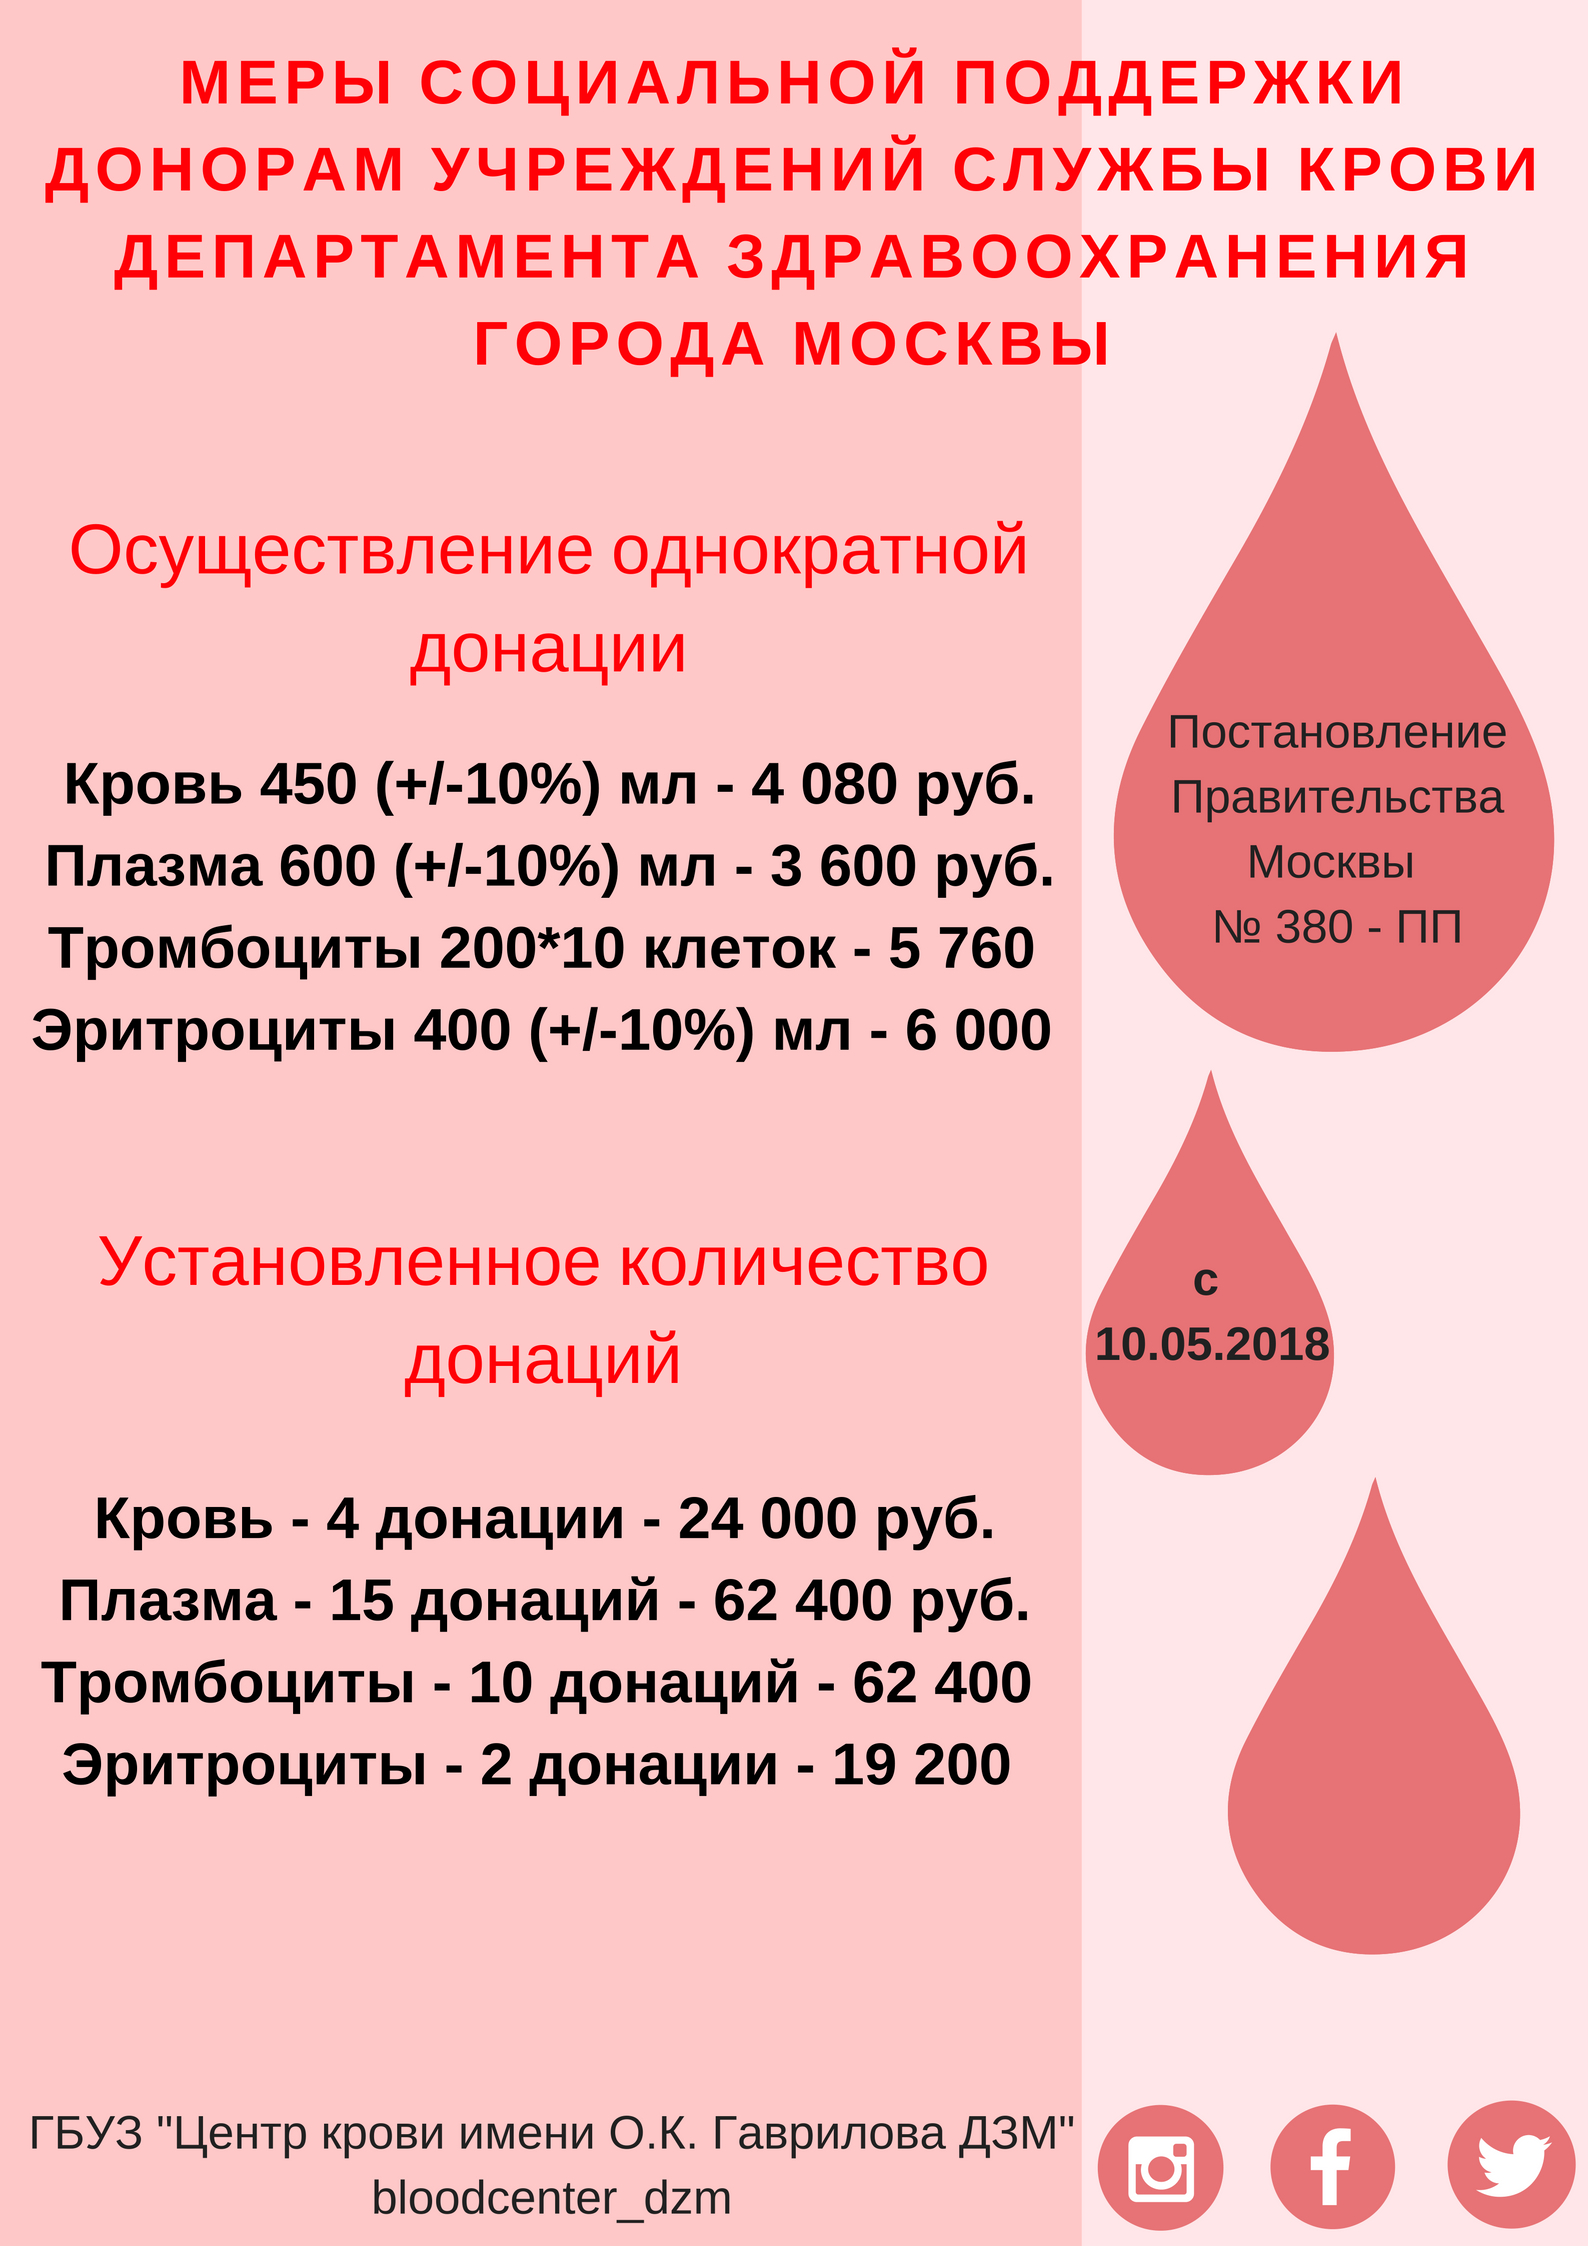 Что получает донор крови. Вознаграждение за донорство крови. Плата донорам за сдачу крови. Сколько платят за сдачу крови в Москве. Почётный донор Москвы льготы.